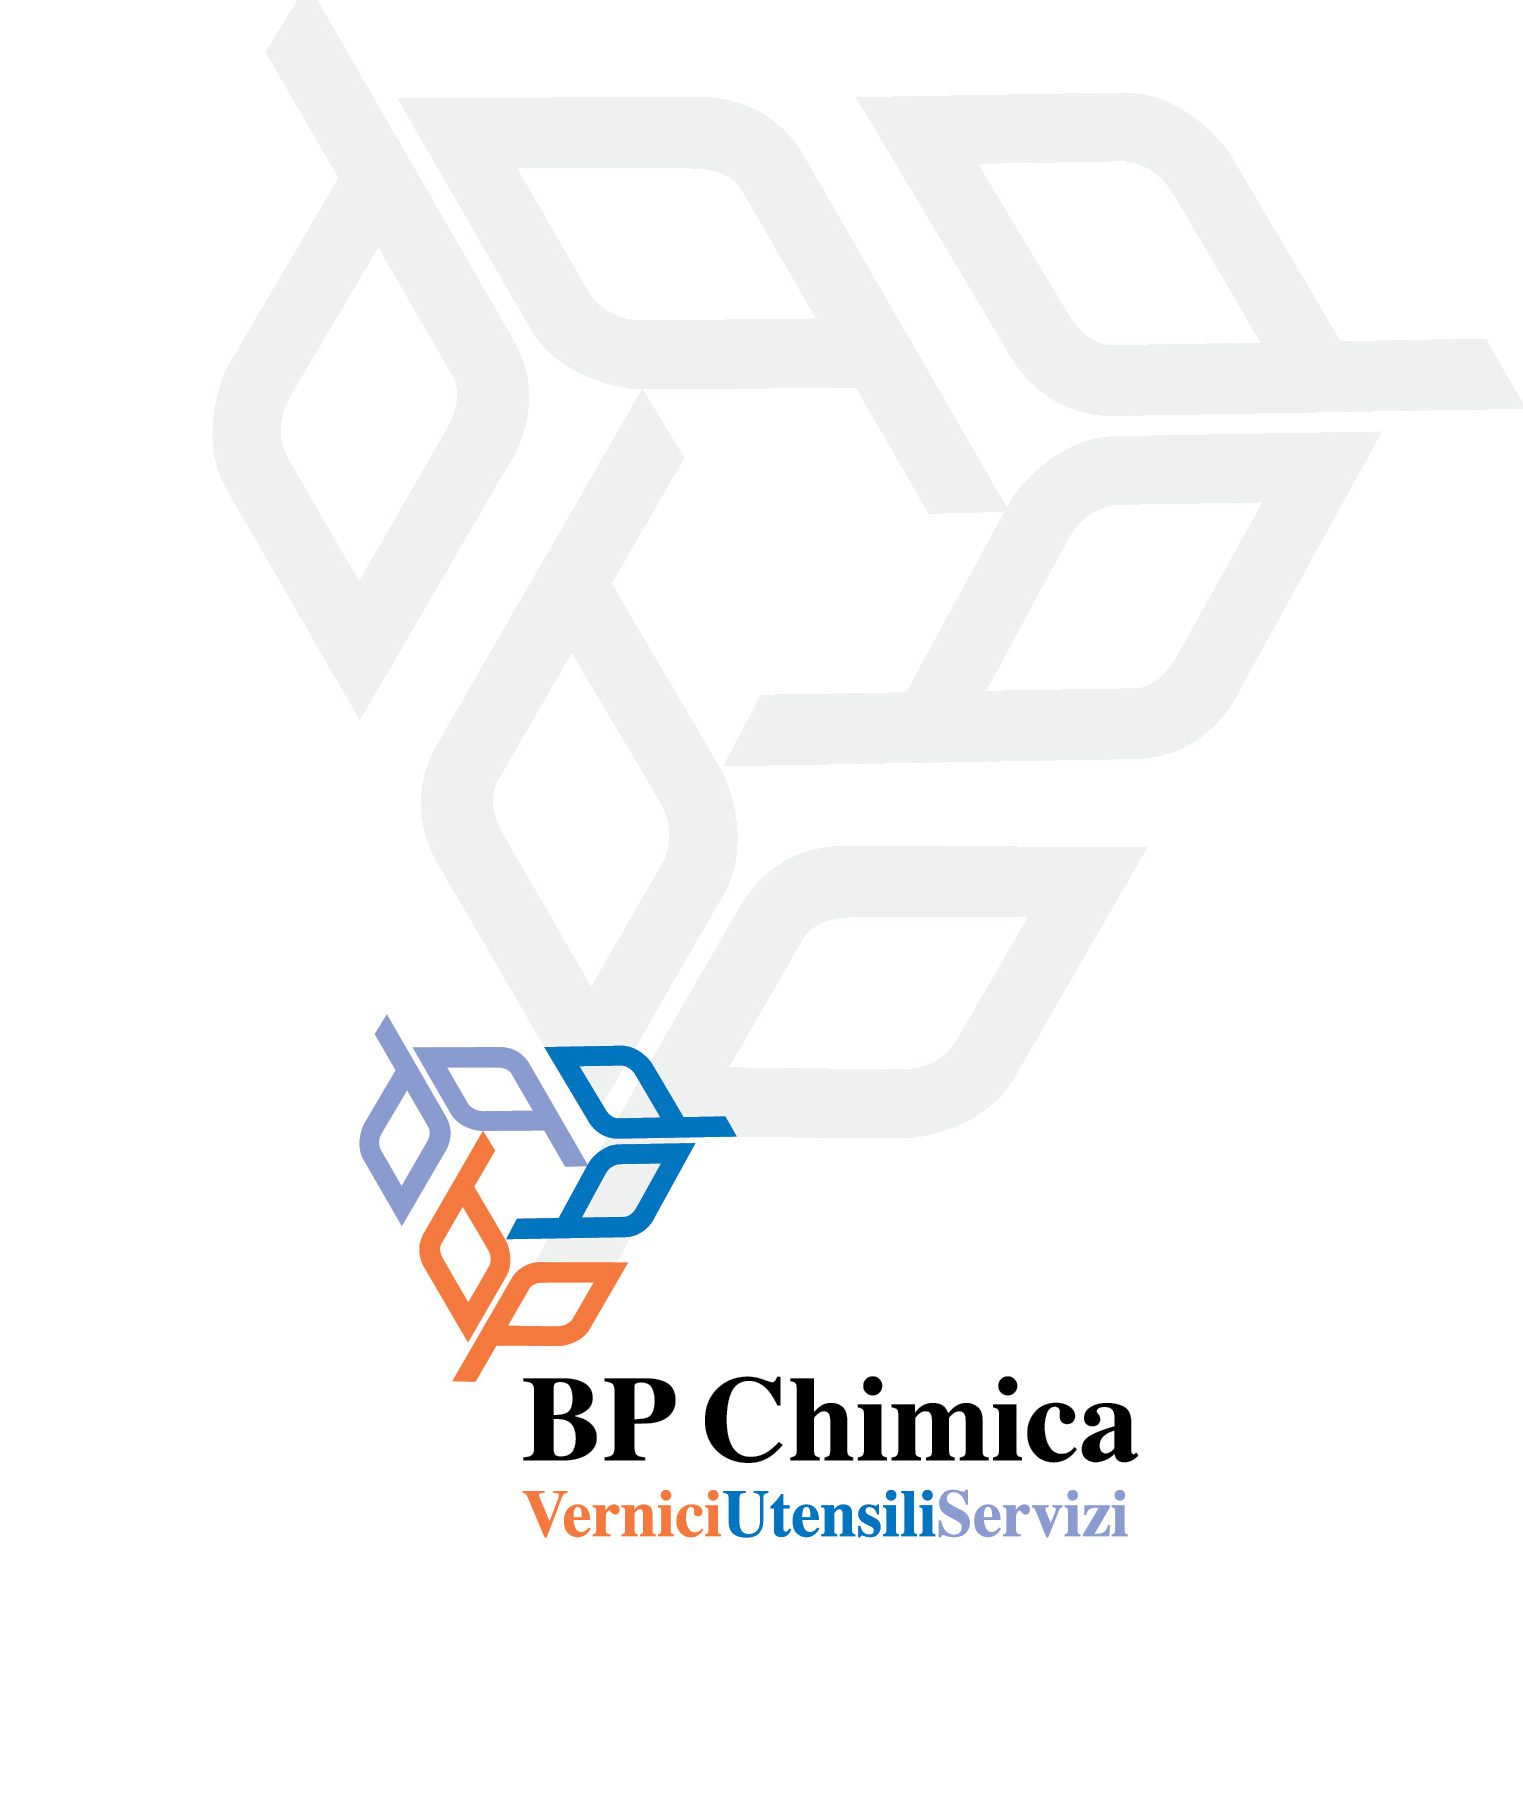 design brand aziendale, marchio e immagine coordinata BP Chimica